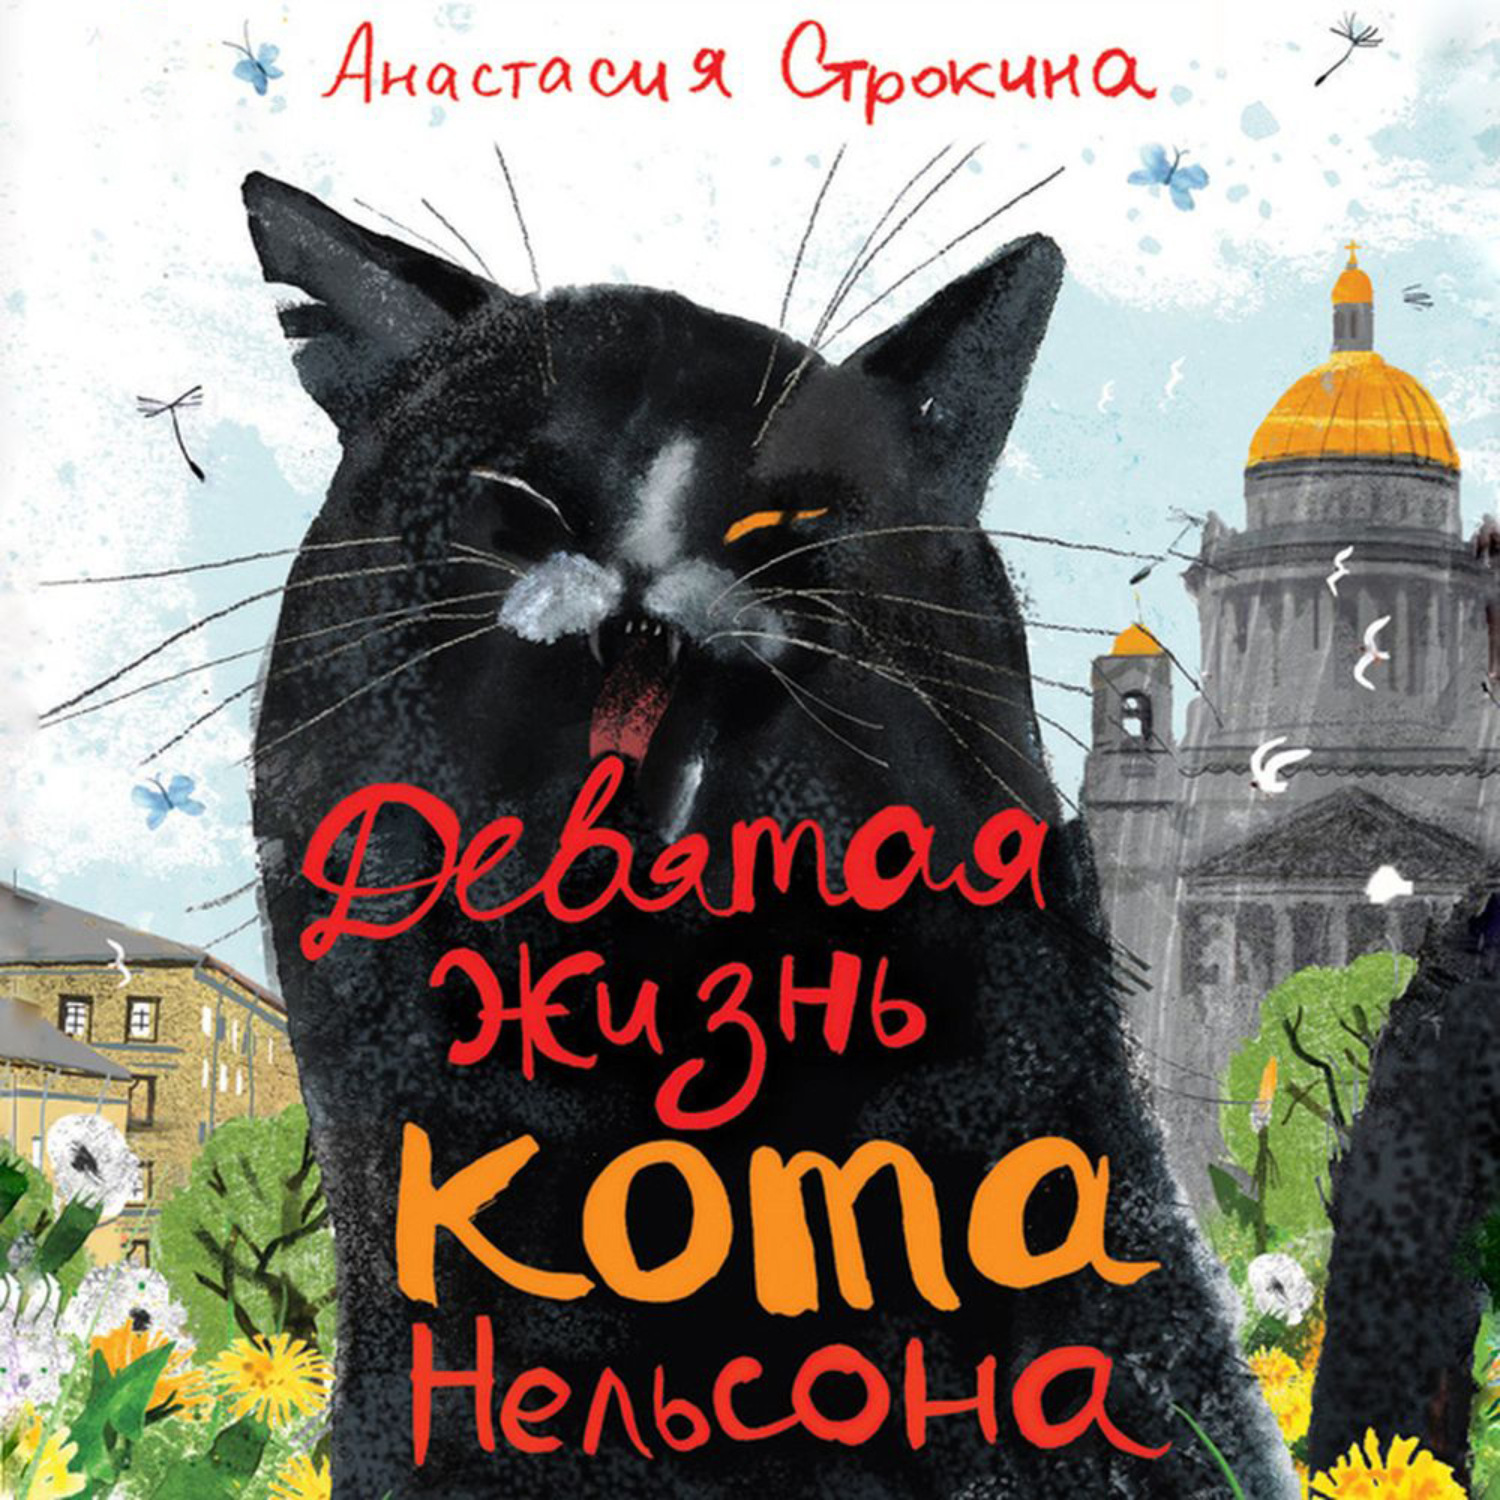 9 жизней московская. Девятая жизнь кота Нельсона. 9 Жизней кота. Девять жизней кошки книга.